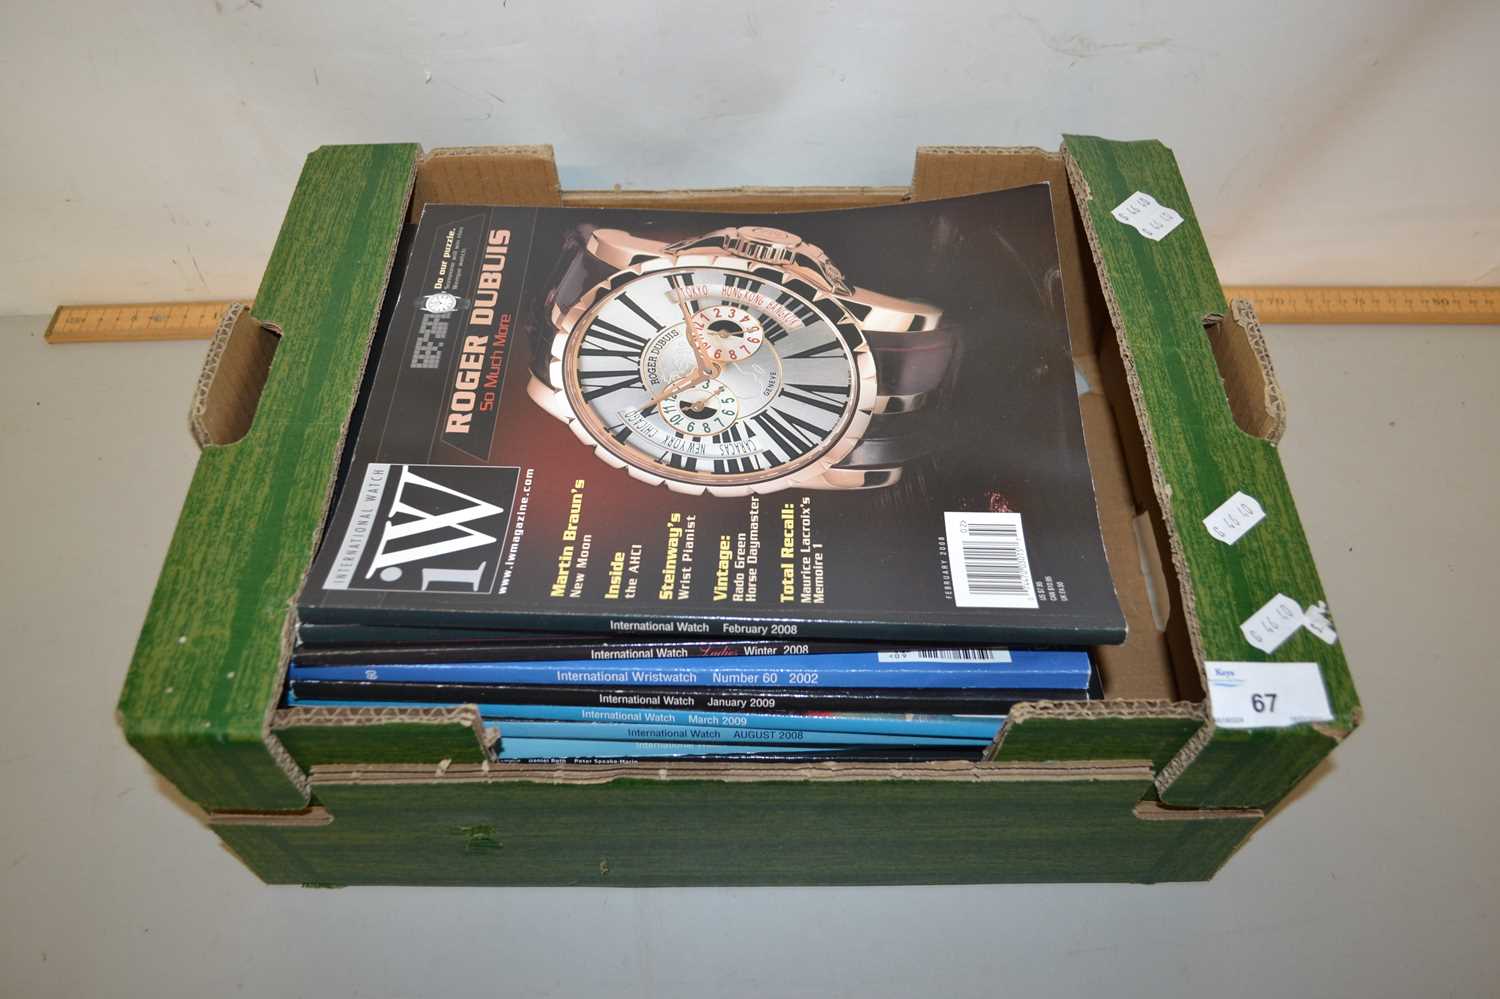 A box of International Watch magazines